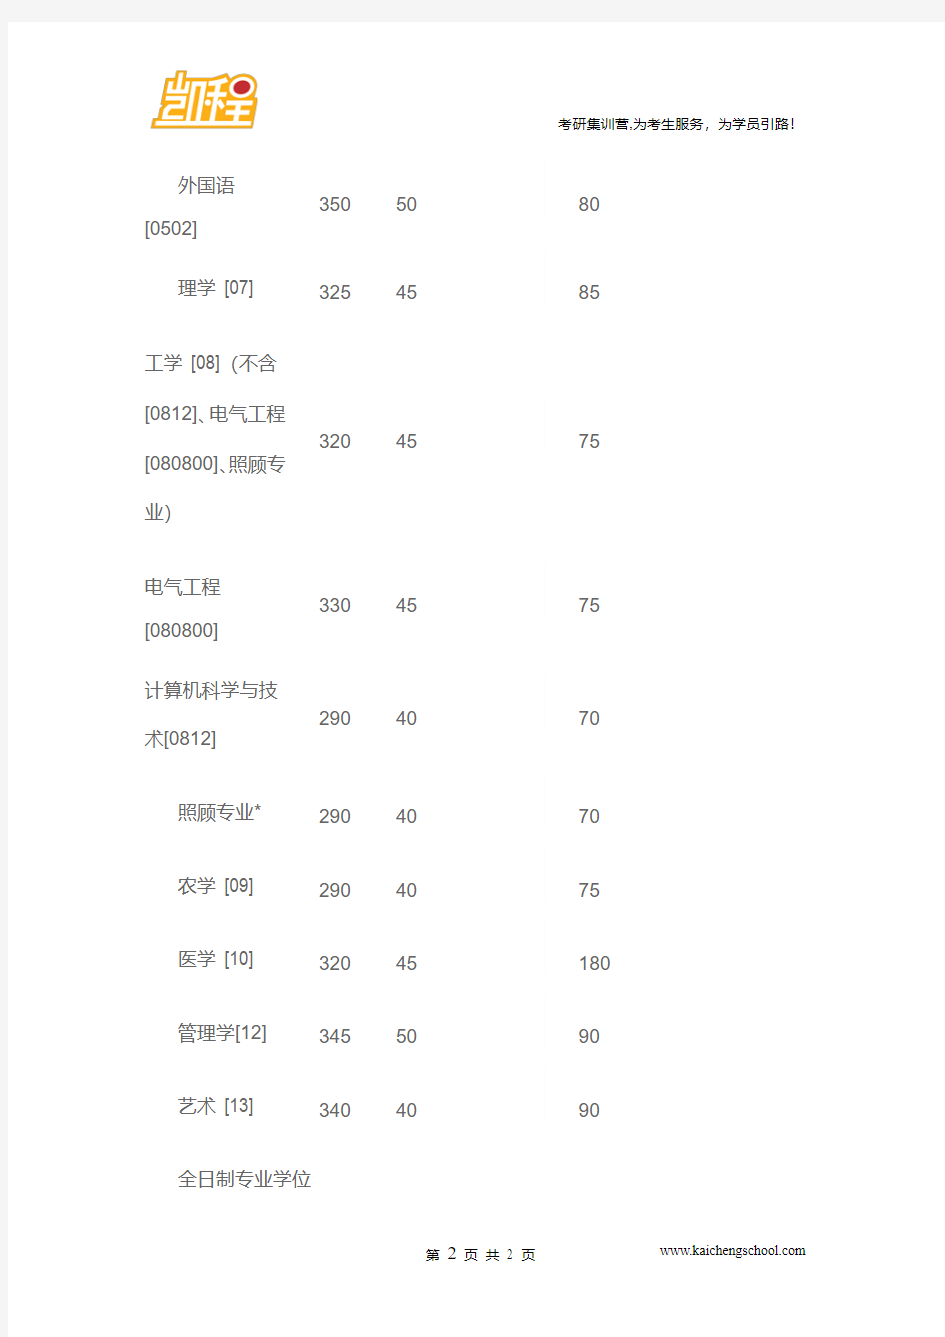 2015年重庆大学管理学[12]考研复试分数线是345分